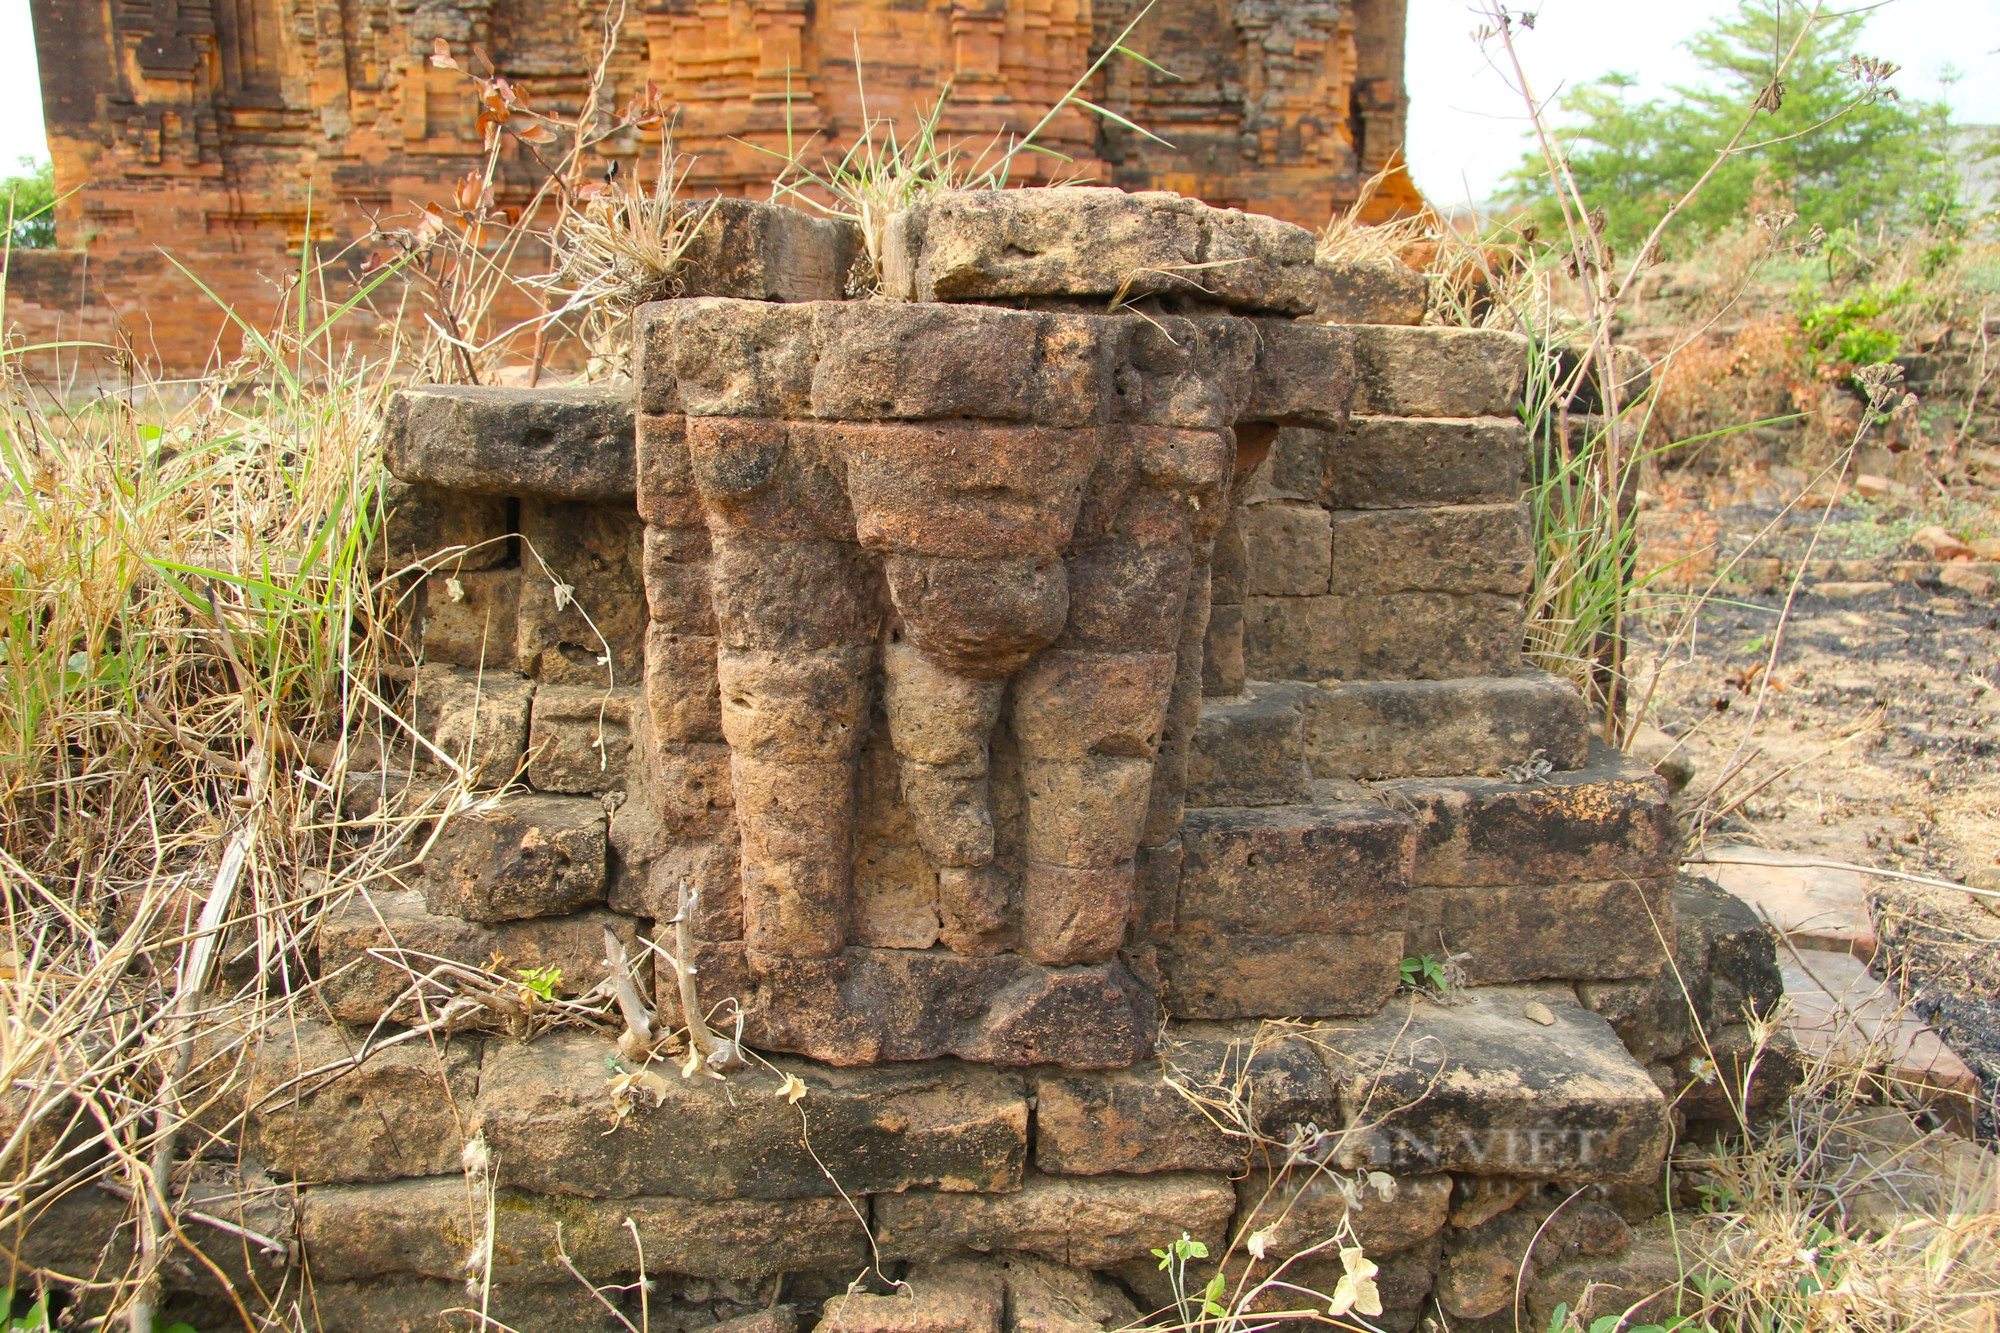 Bí ẩn tháp Chăm cổ “bị bỏ rơi” lại là nơi lưu giữ bảo vật Quốc gia có một không hai ở Ninh Thuận - Ảnh 11.